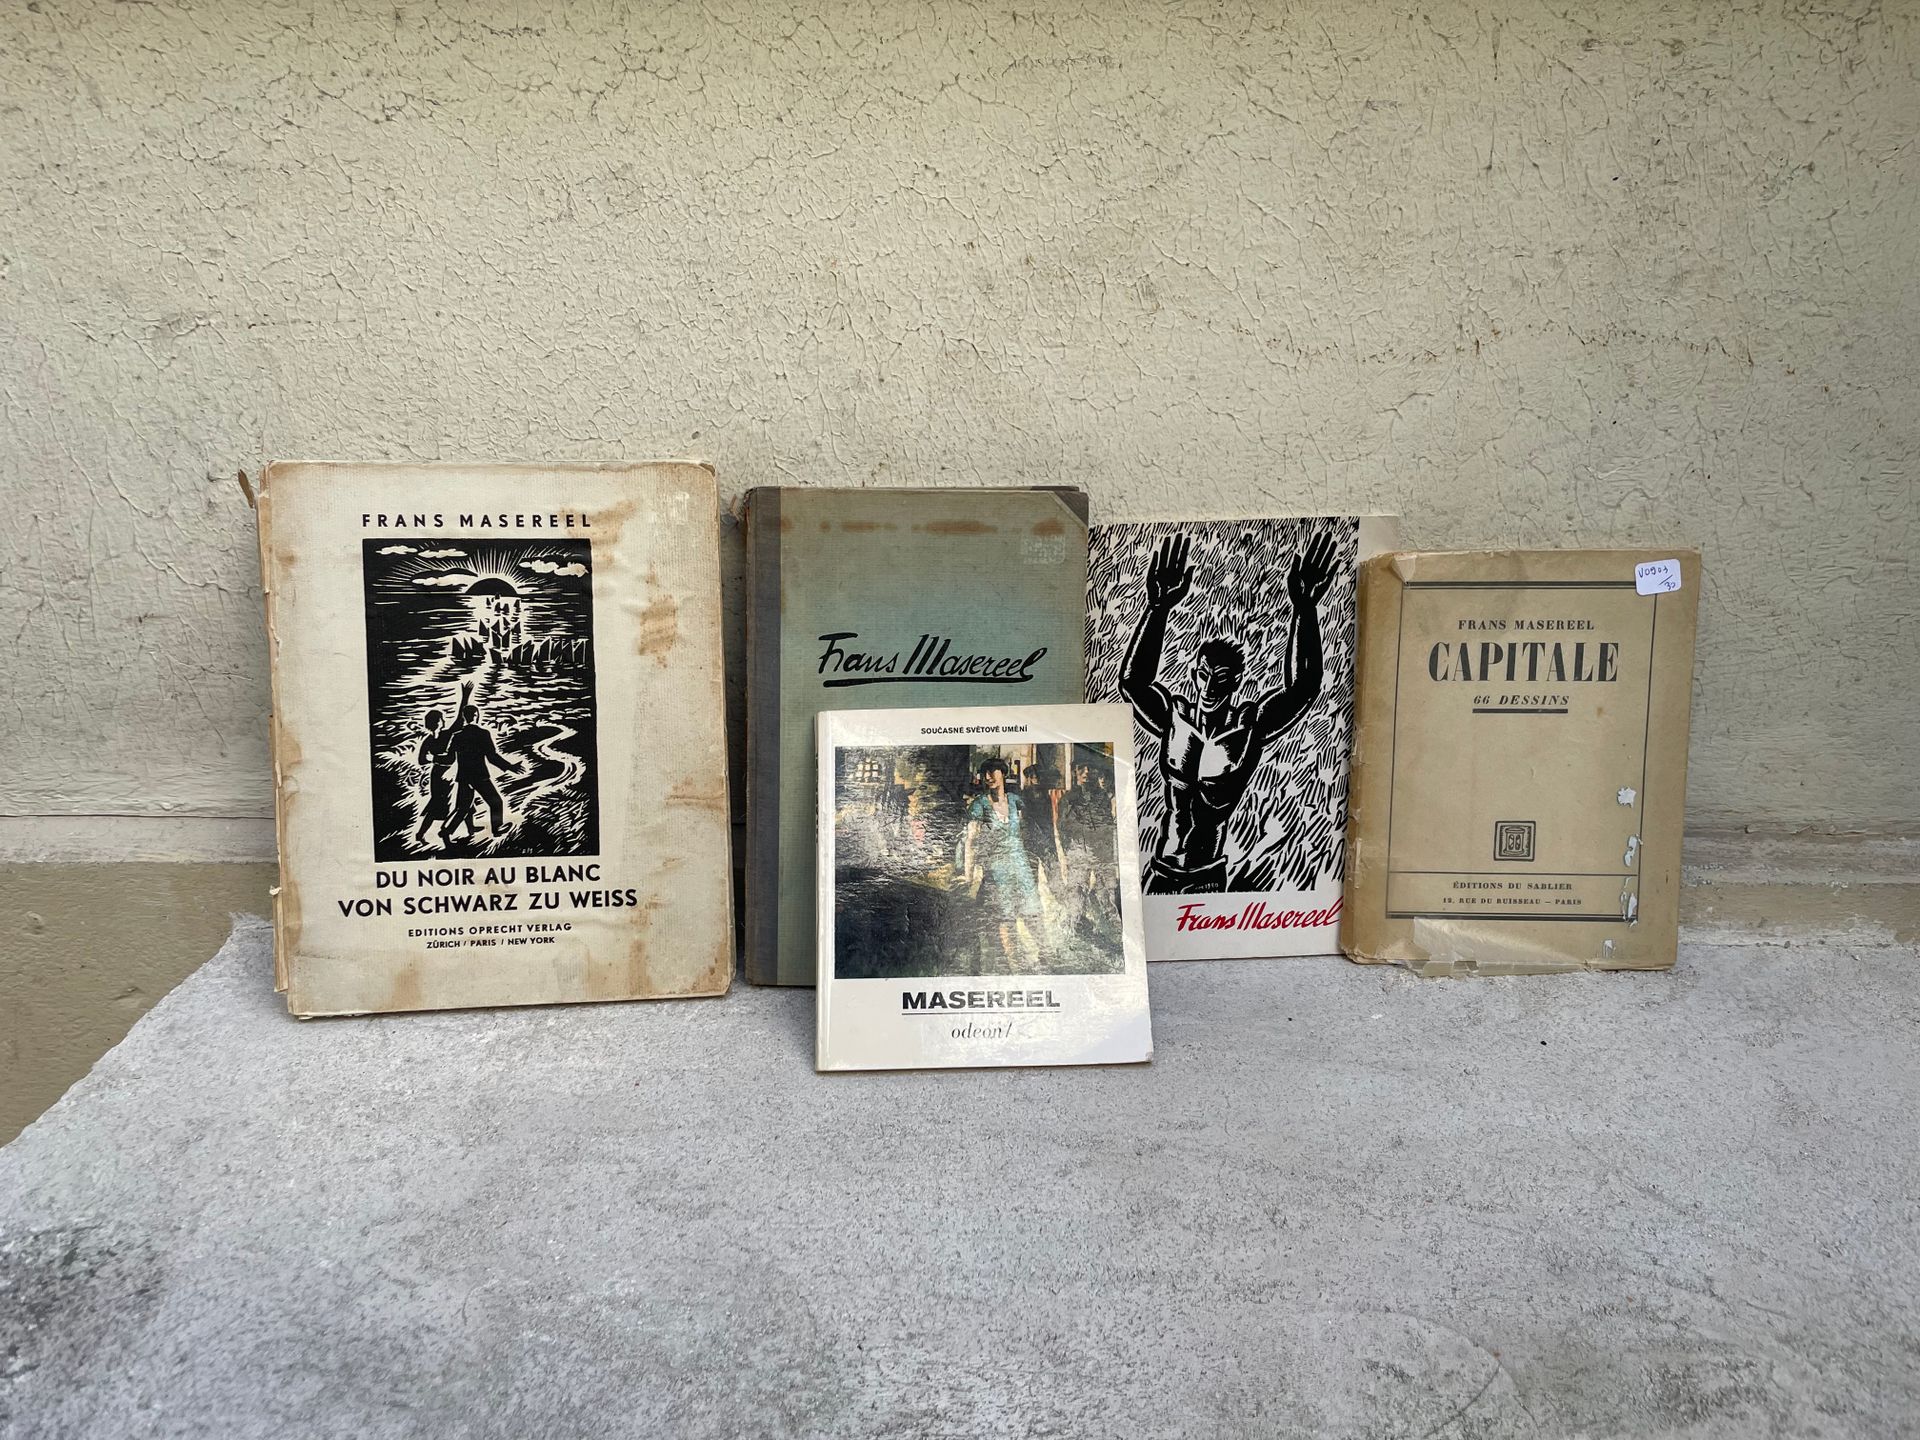 Null 很多书，包括

由Frans Masereel绘制的五本书，包括《从黑到白》，并有献词。

菲利普-让-赫塞尔的 "沉默的说唱 "与绘画和发送

两本&hellip;